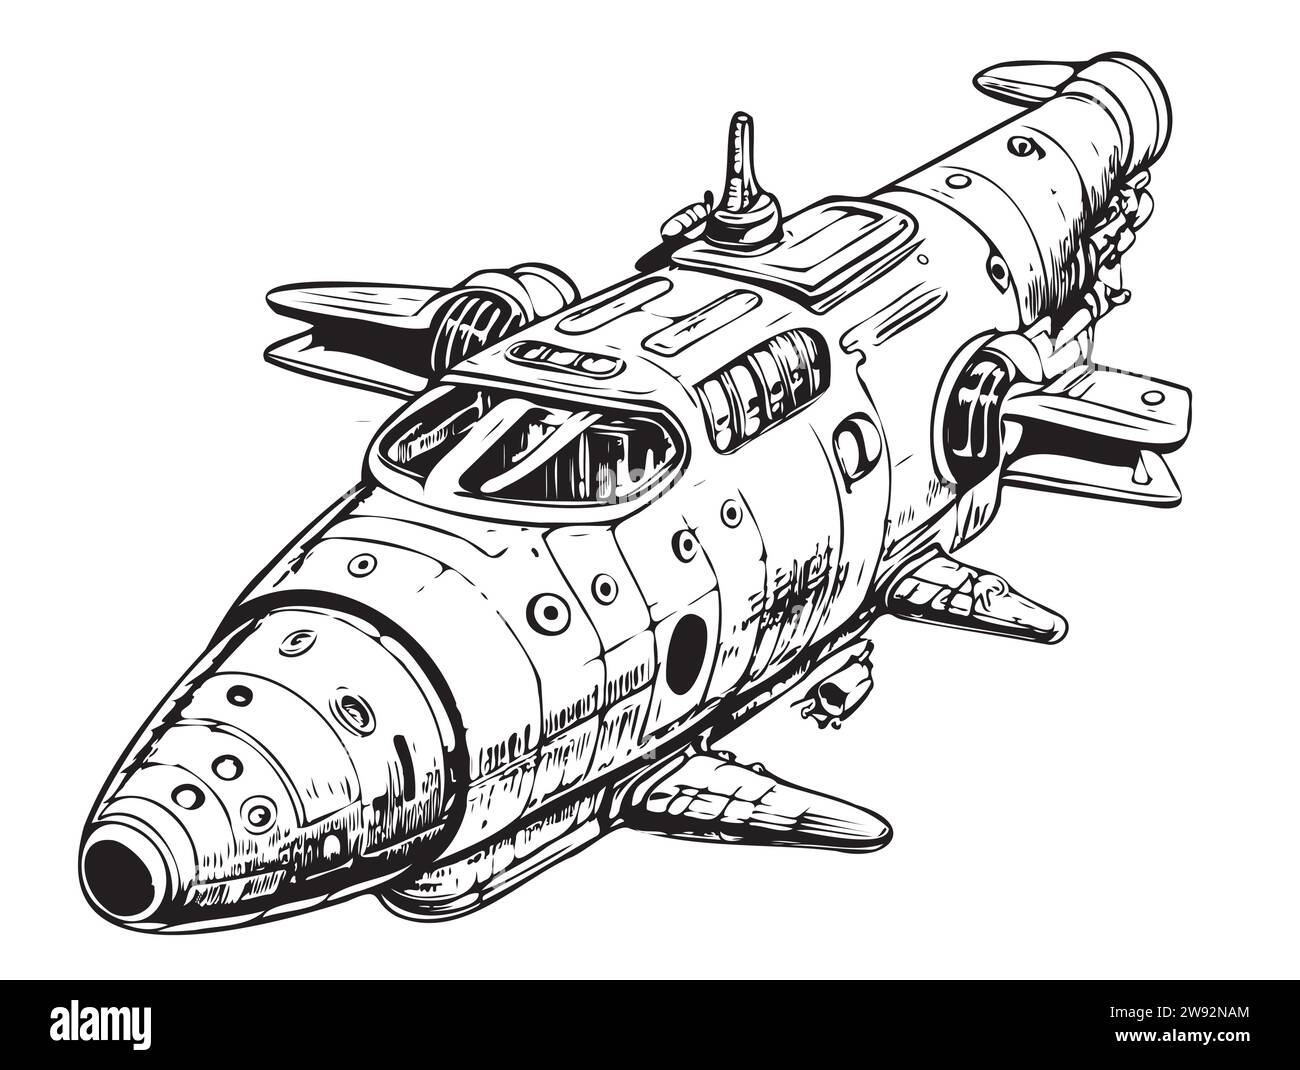 Schizzo dell'astronave in stile retrò, disegnato a mano. Illustrazione vettoriale. Fumetti Illustrazione Vettoriale